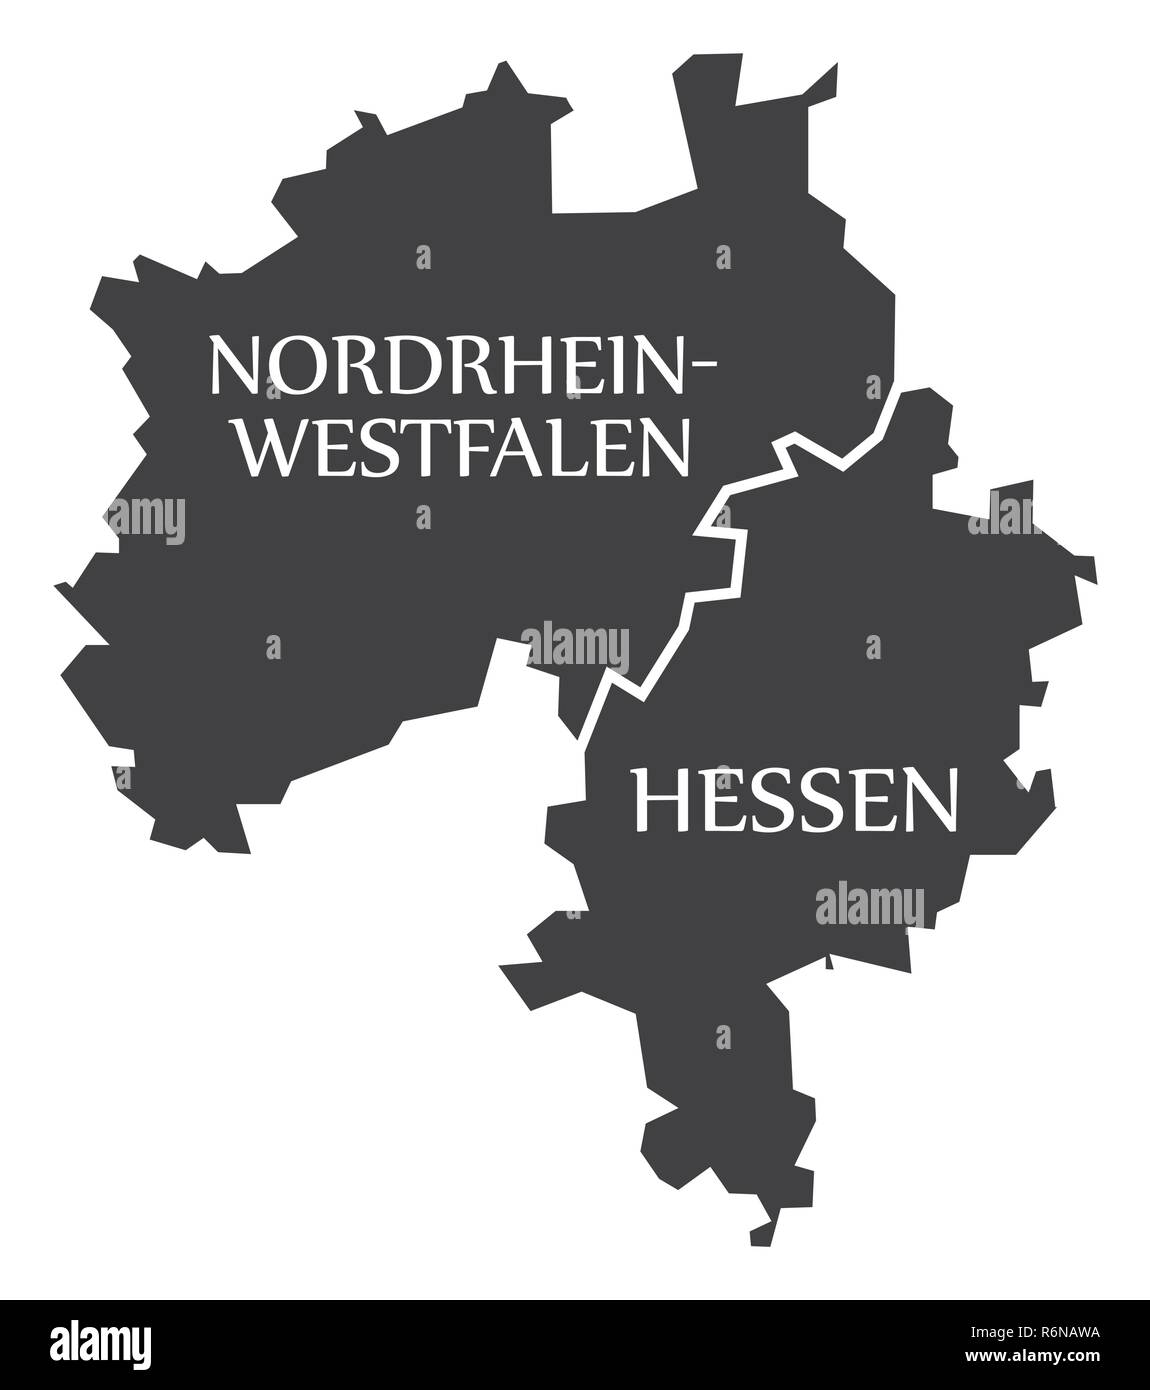 Nordrhein-westfalen - Hessen Bundesländer Karte von Deutschland schwarz mit Titel Stock Vektor